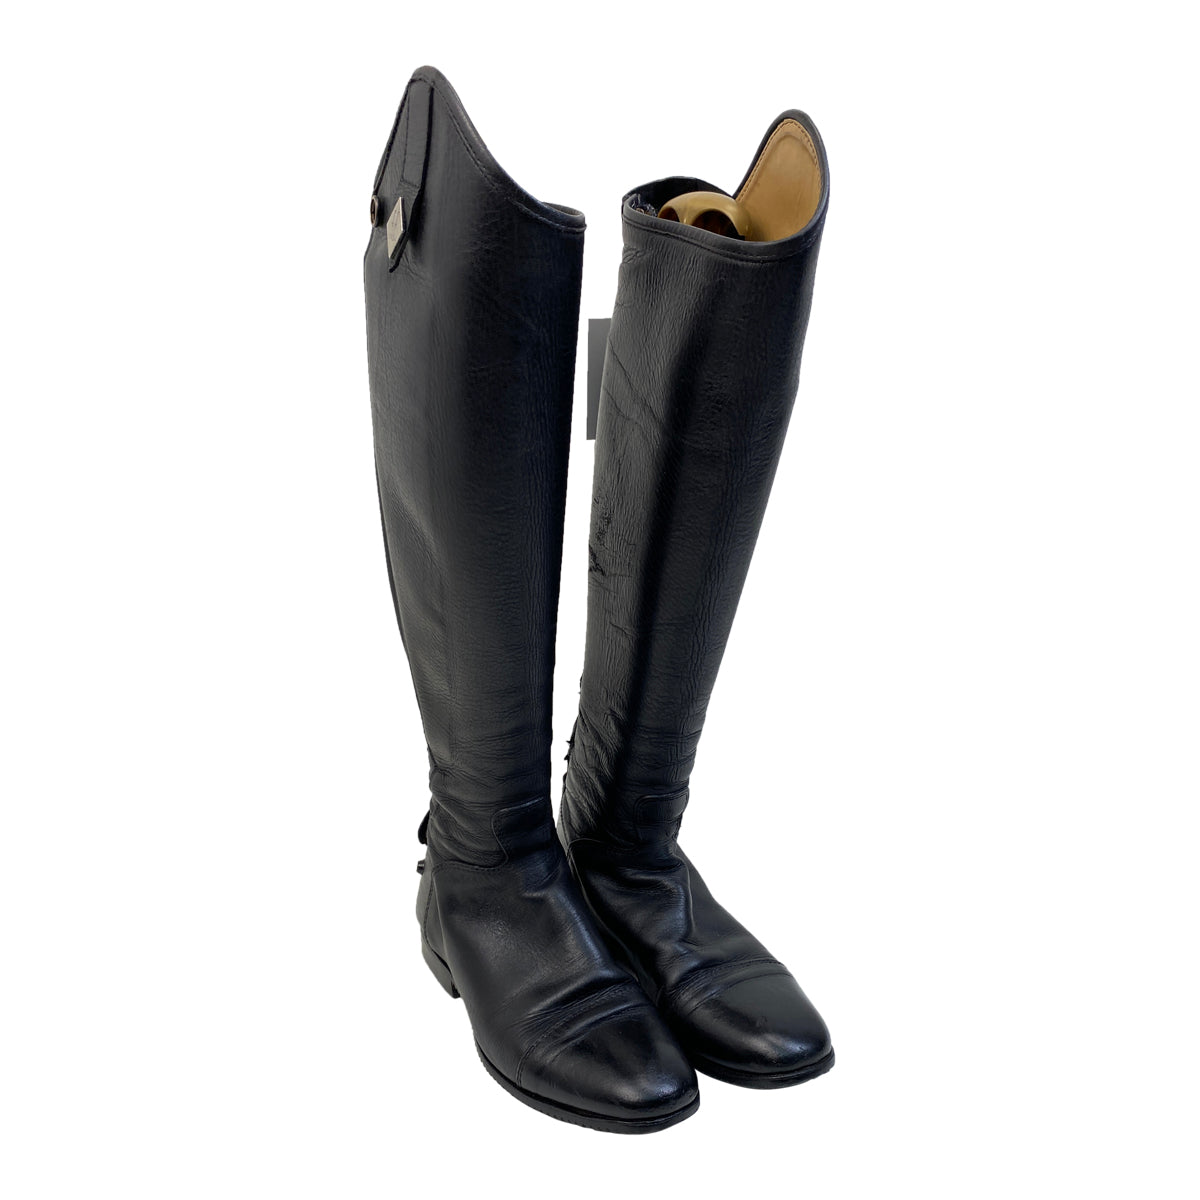 Fabbri Pro Dress Boots in Black